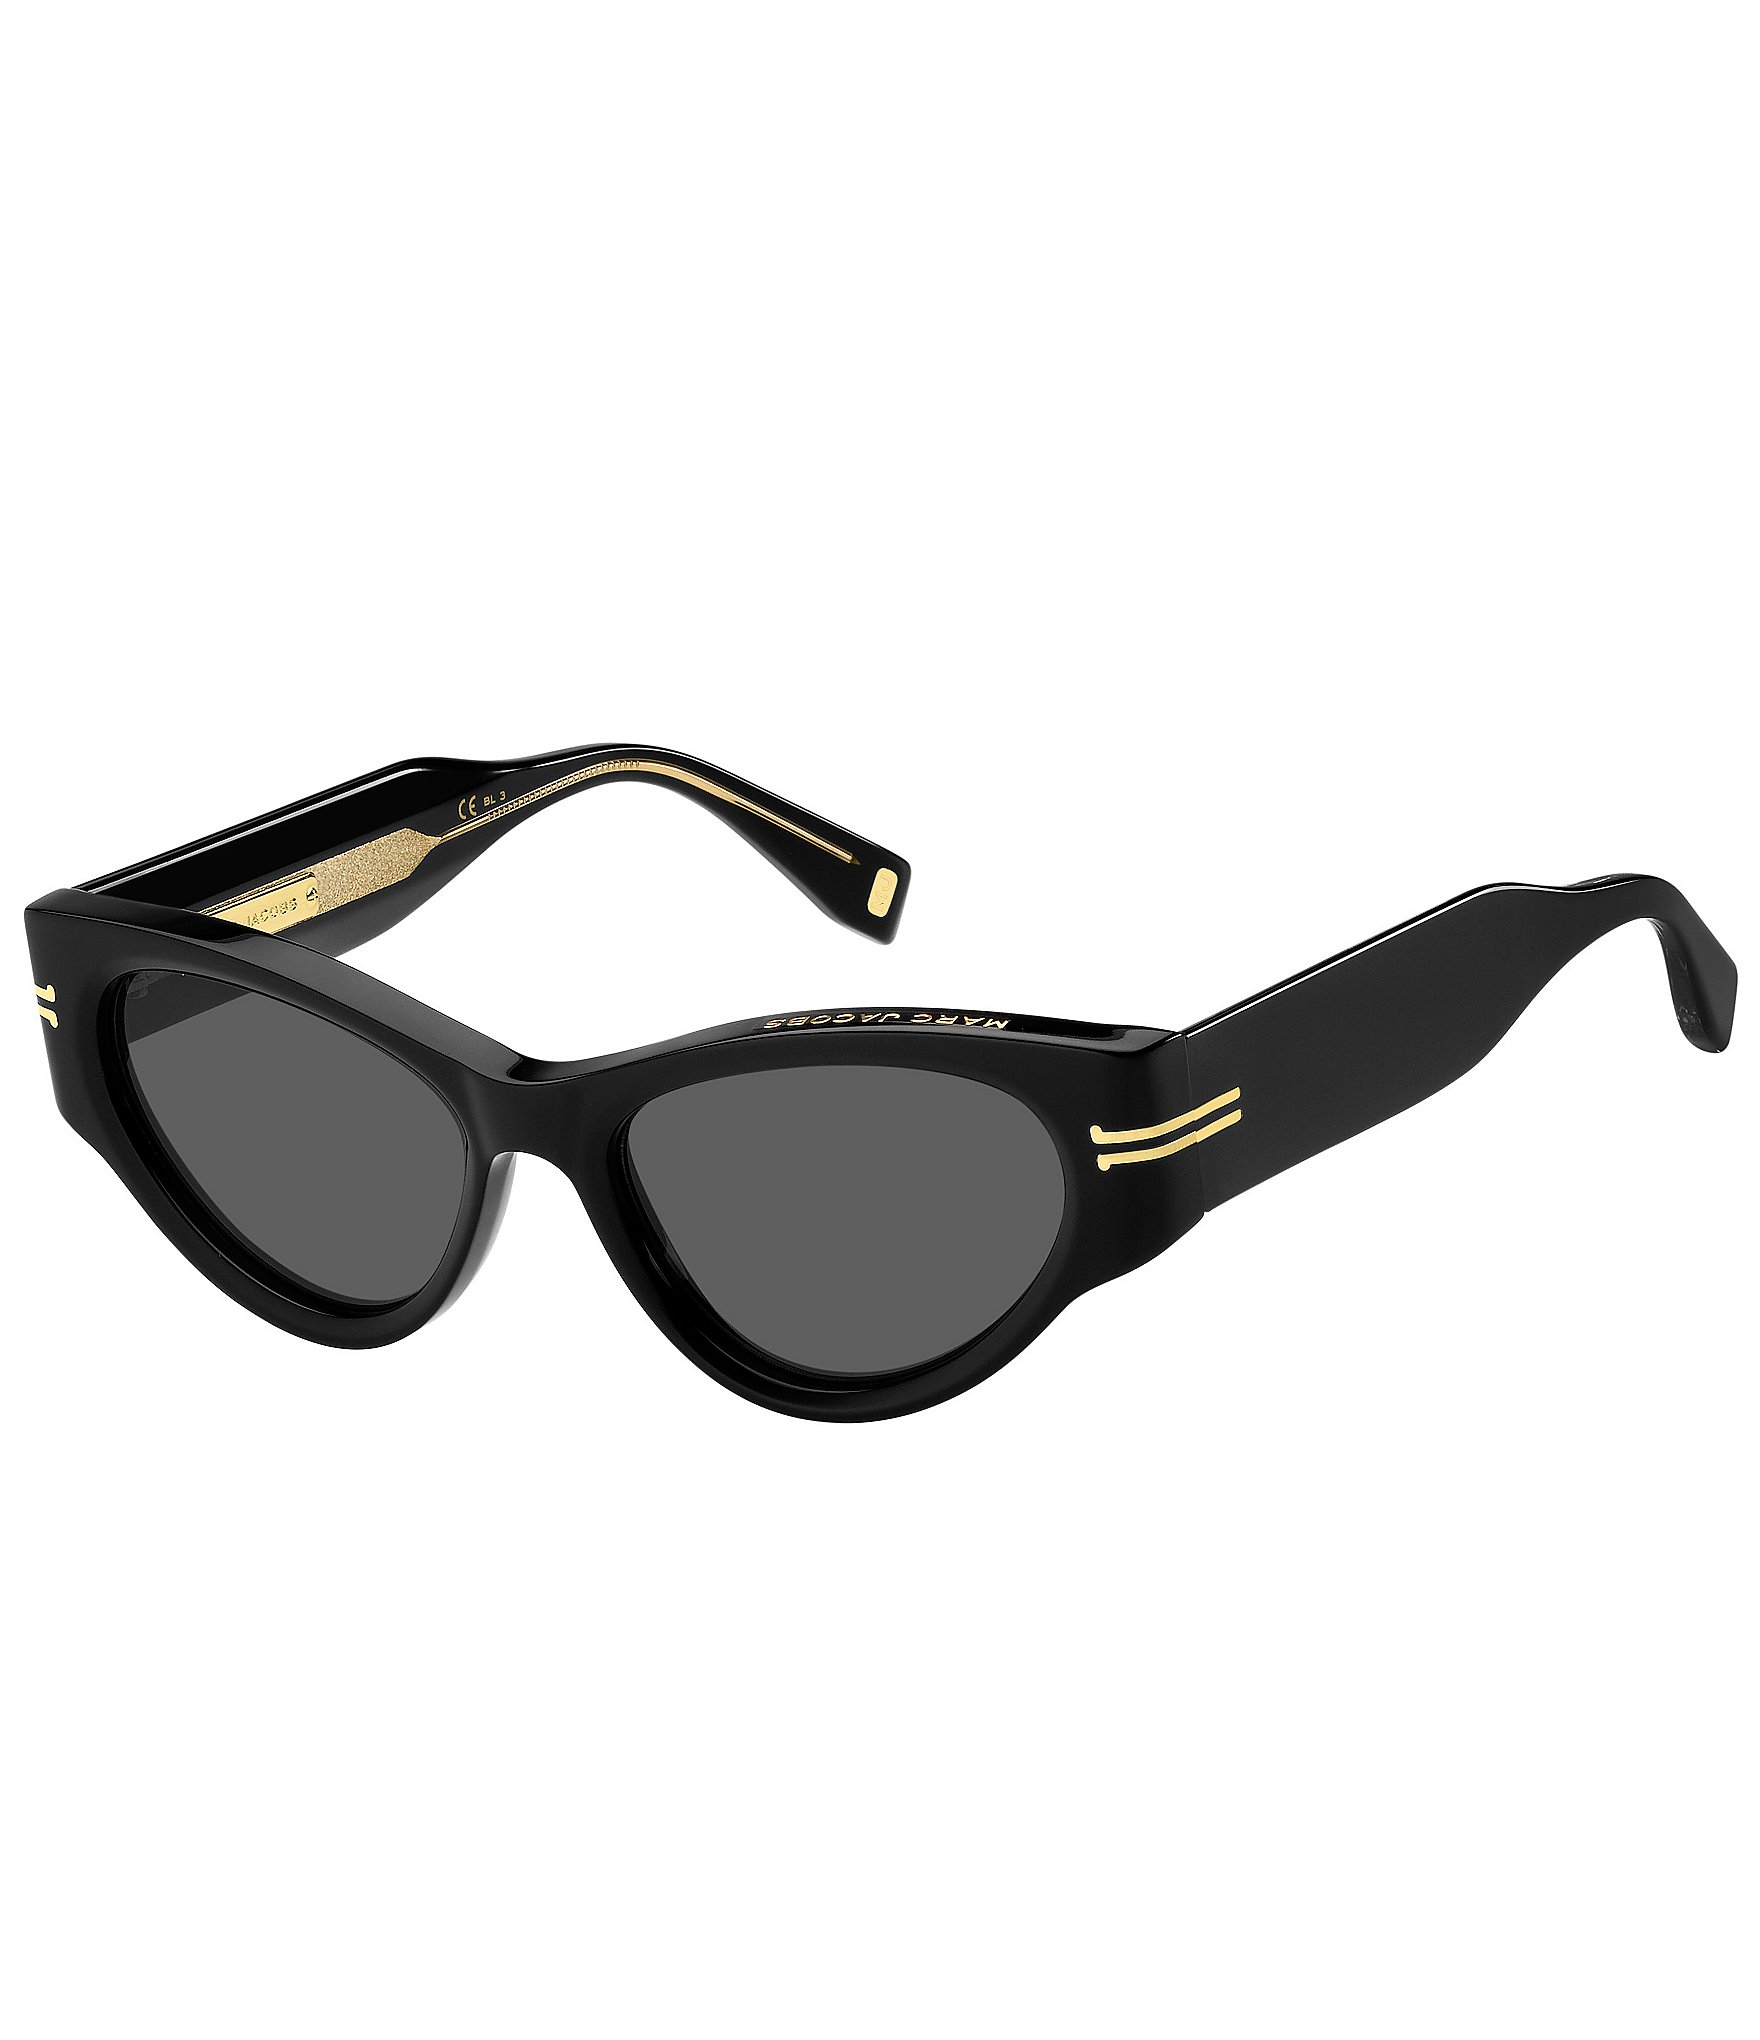 Sunglasses Marc Jacobs 26 / S col. 7329C | Occhiali | Ottica Scauzillo